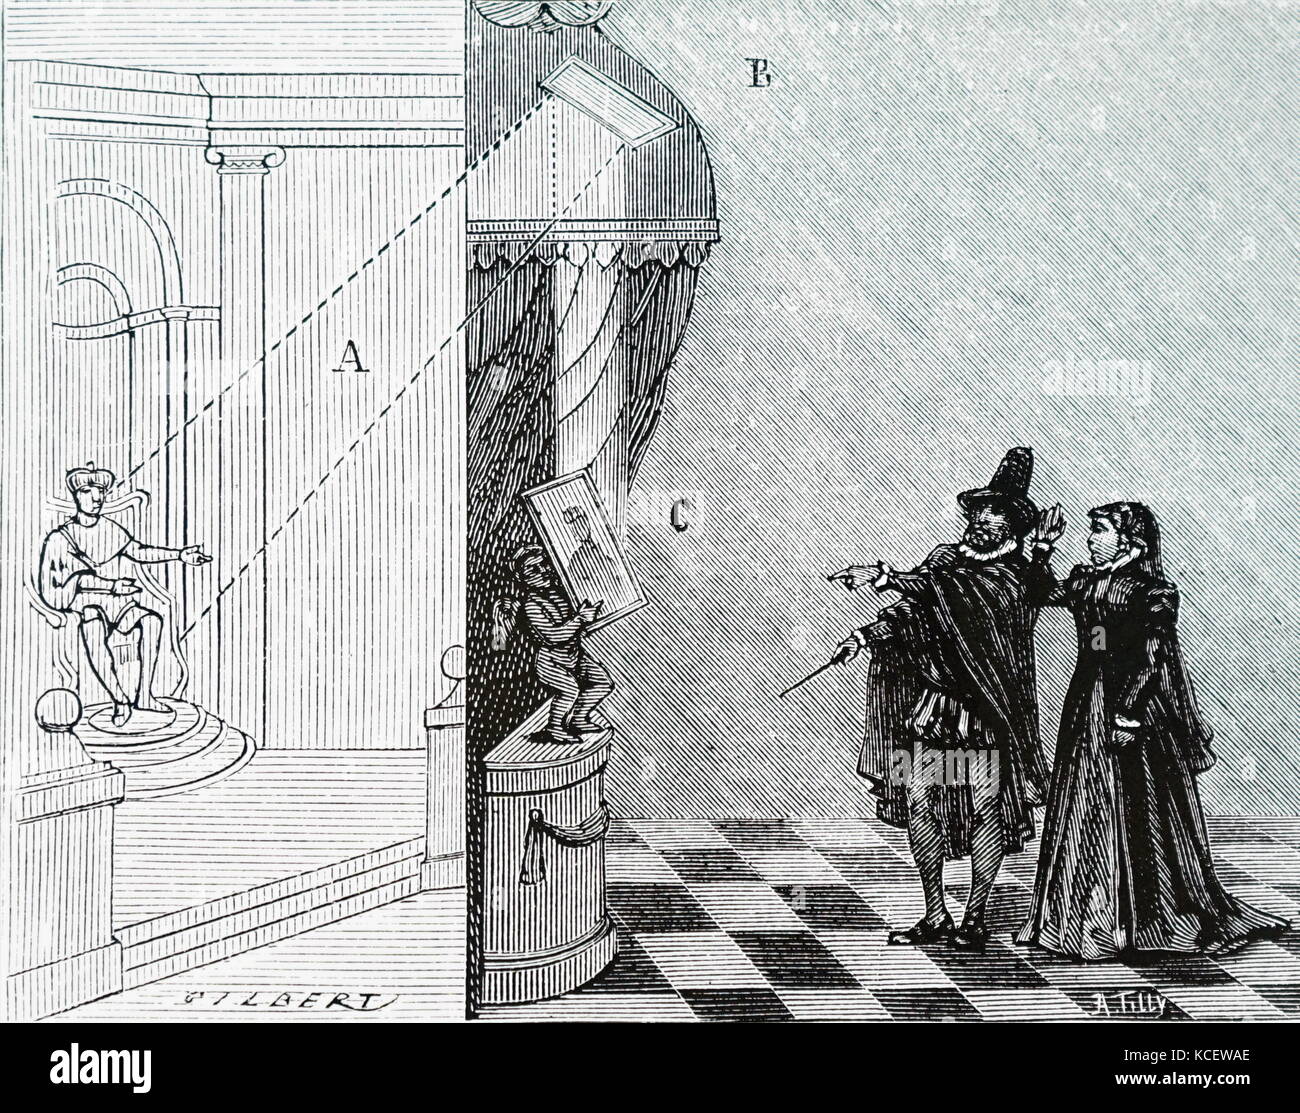 Grabado mostrando cómo Nostradamus (1503-1566) fue capaz de utilizar su espejo mágico para profetizar la suerte de los reyes de Francia con Catalina de Medici. Fecha del siglo XIX Foto de stock